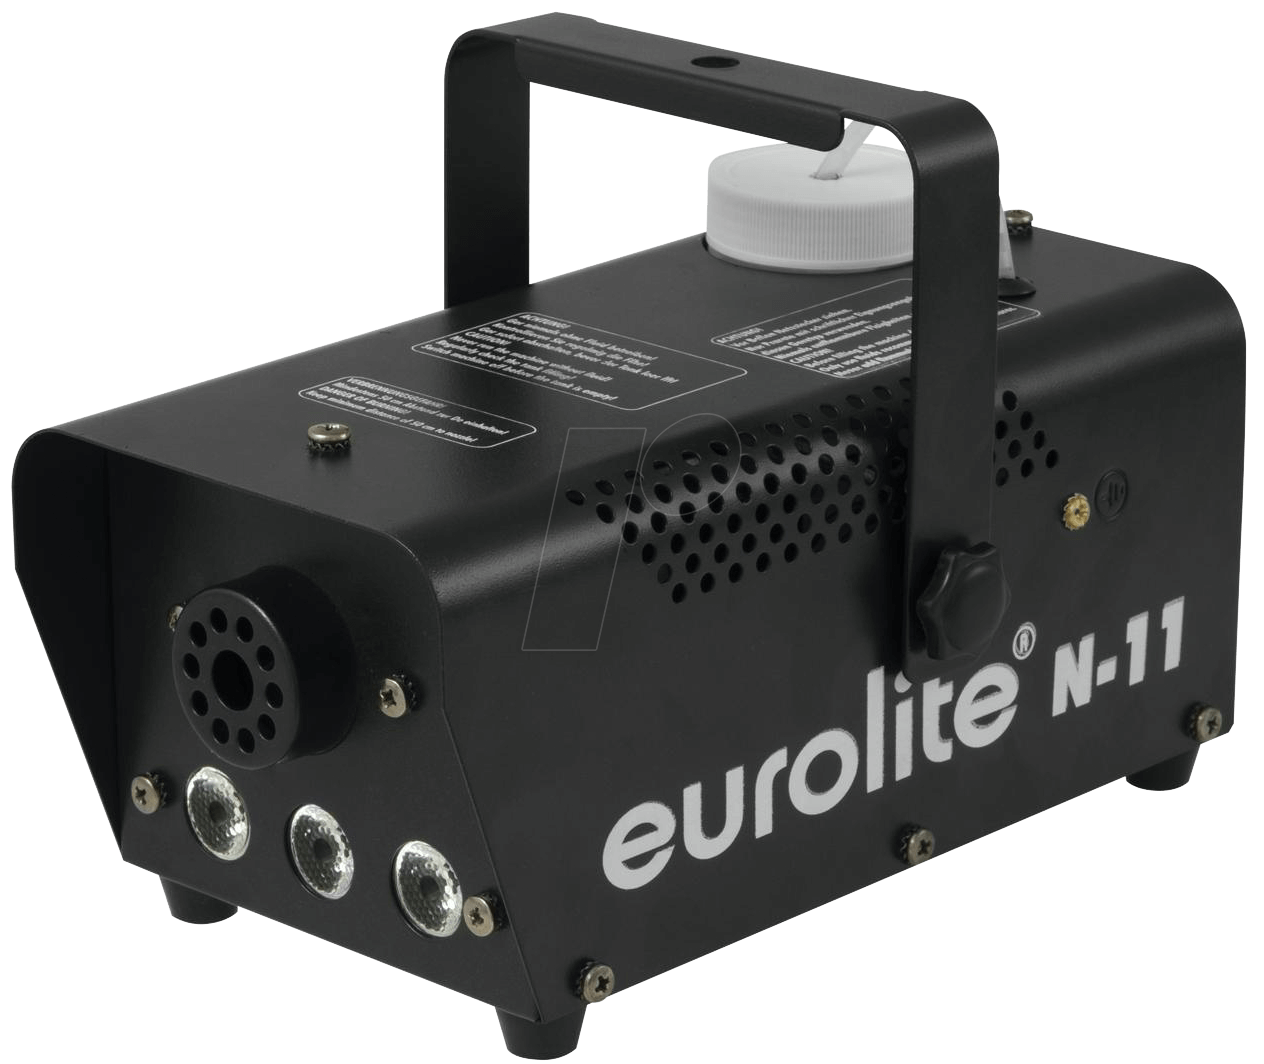 Eurolite Nebelmaschine N-11 LED HYBRID BL mit Lichteffekt, inkl. Kabelfernbedienung, inkl. Befestigungsbügel (51701957)